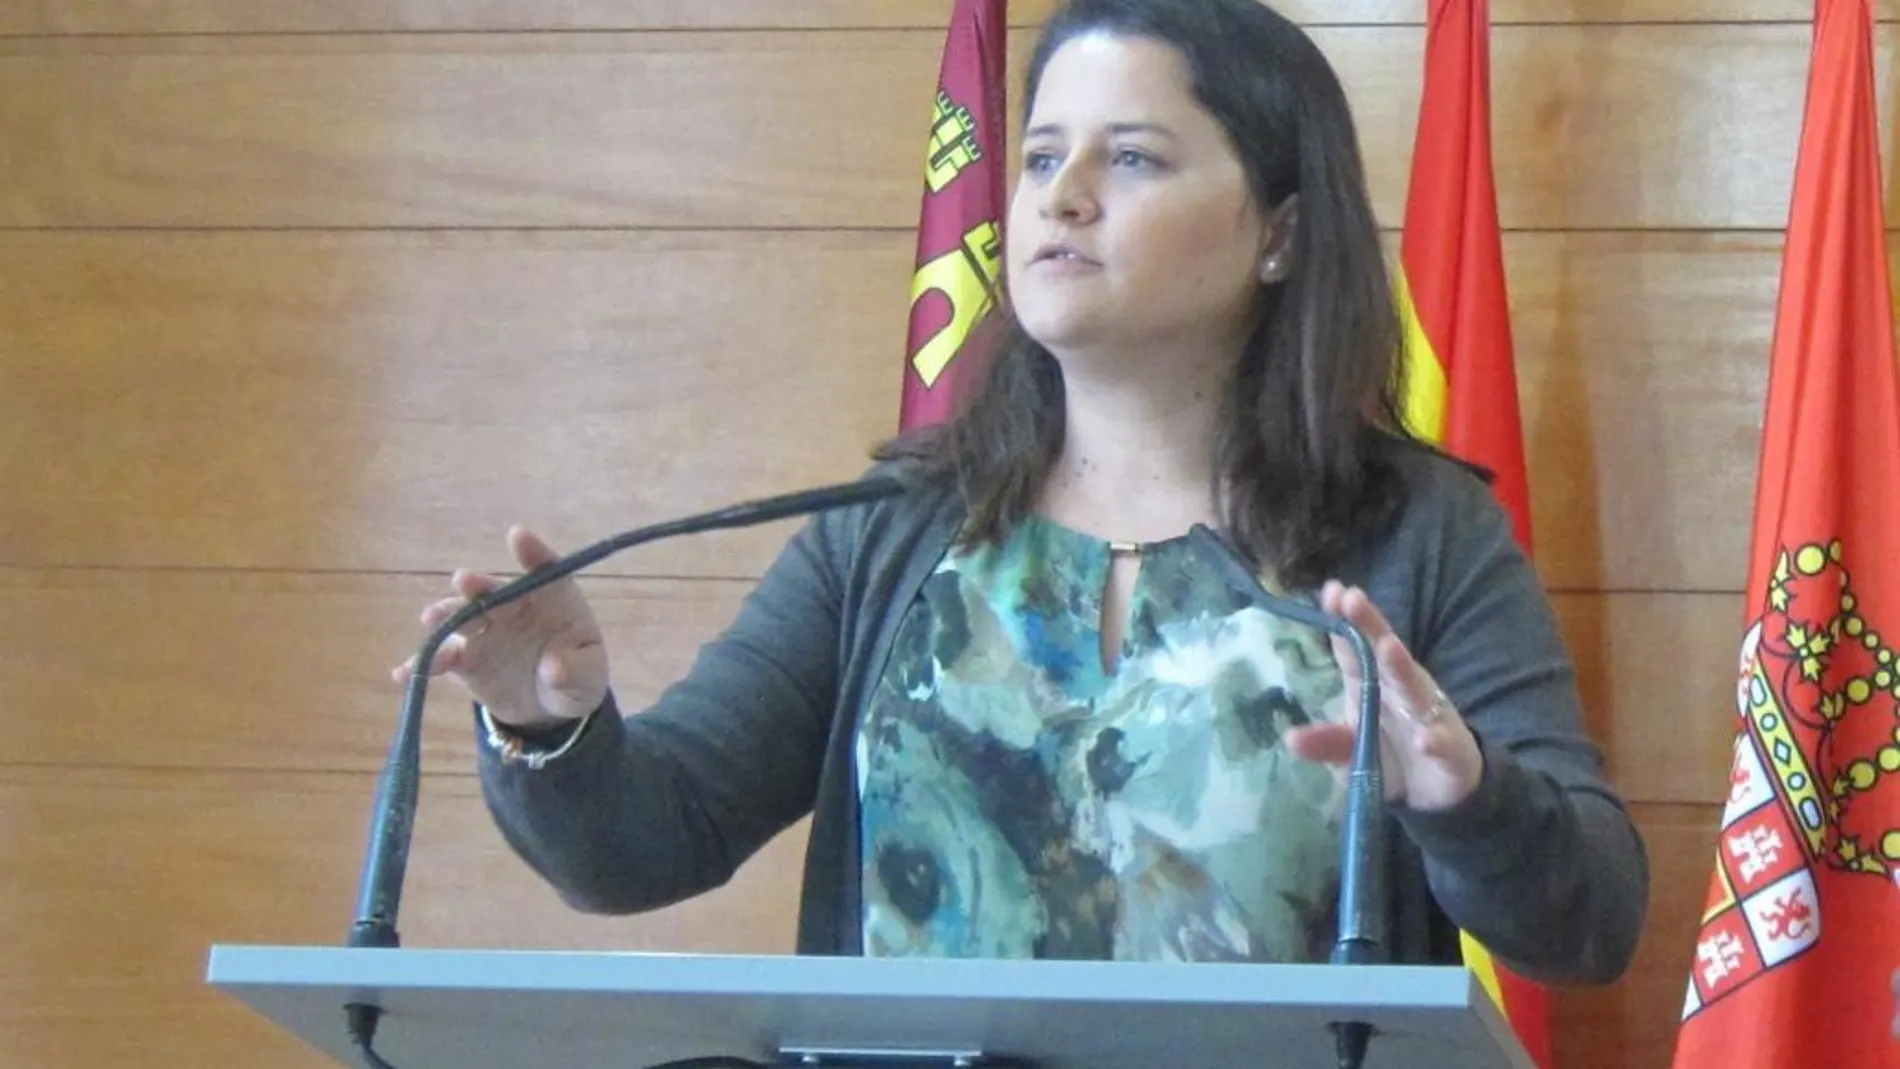 La concejala de Tráfico en el Ayuntamiento de Murcia, Lola Sánchez, anunció ayer que le habían amenazado